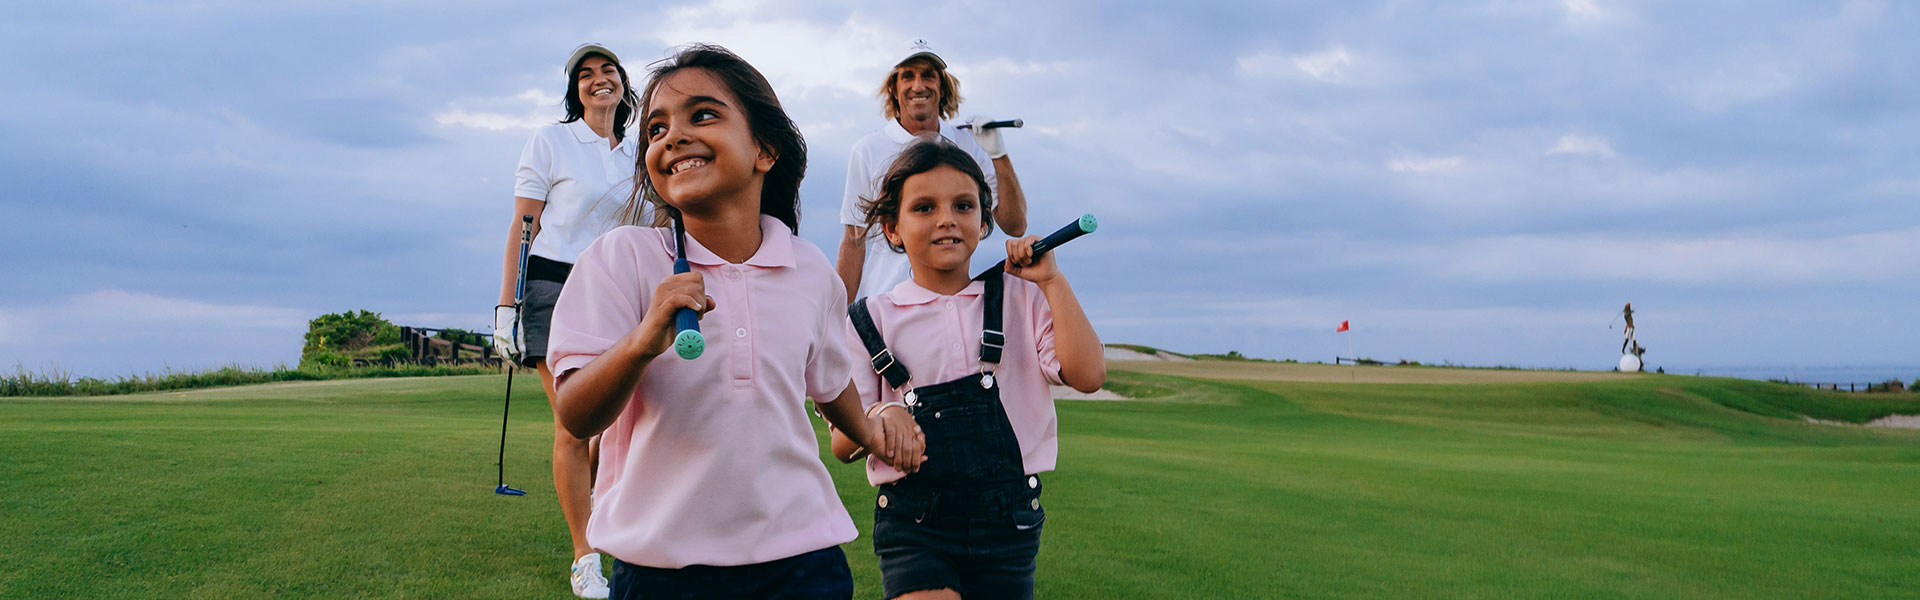 Golf Mental-Coaching für Jugendliche, Kinder und/oder Eltern